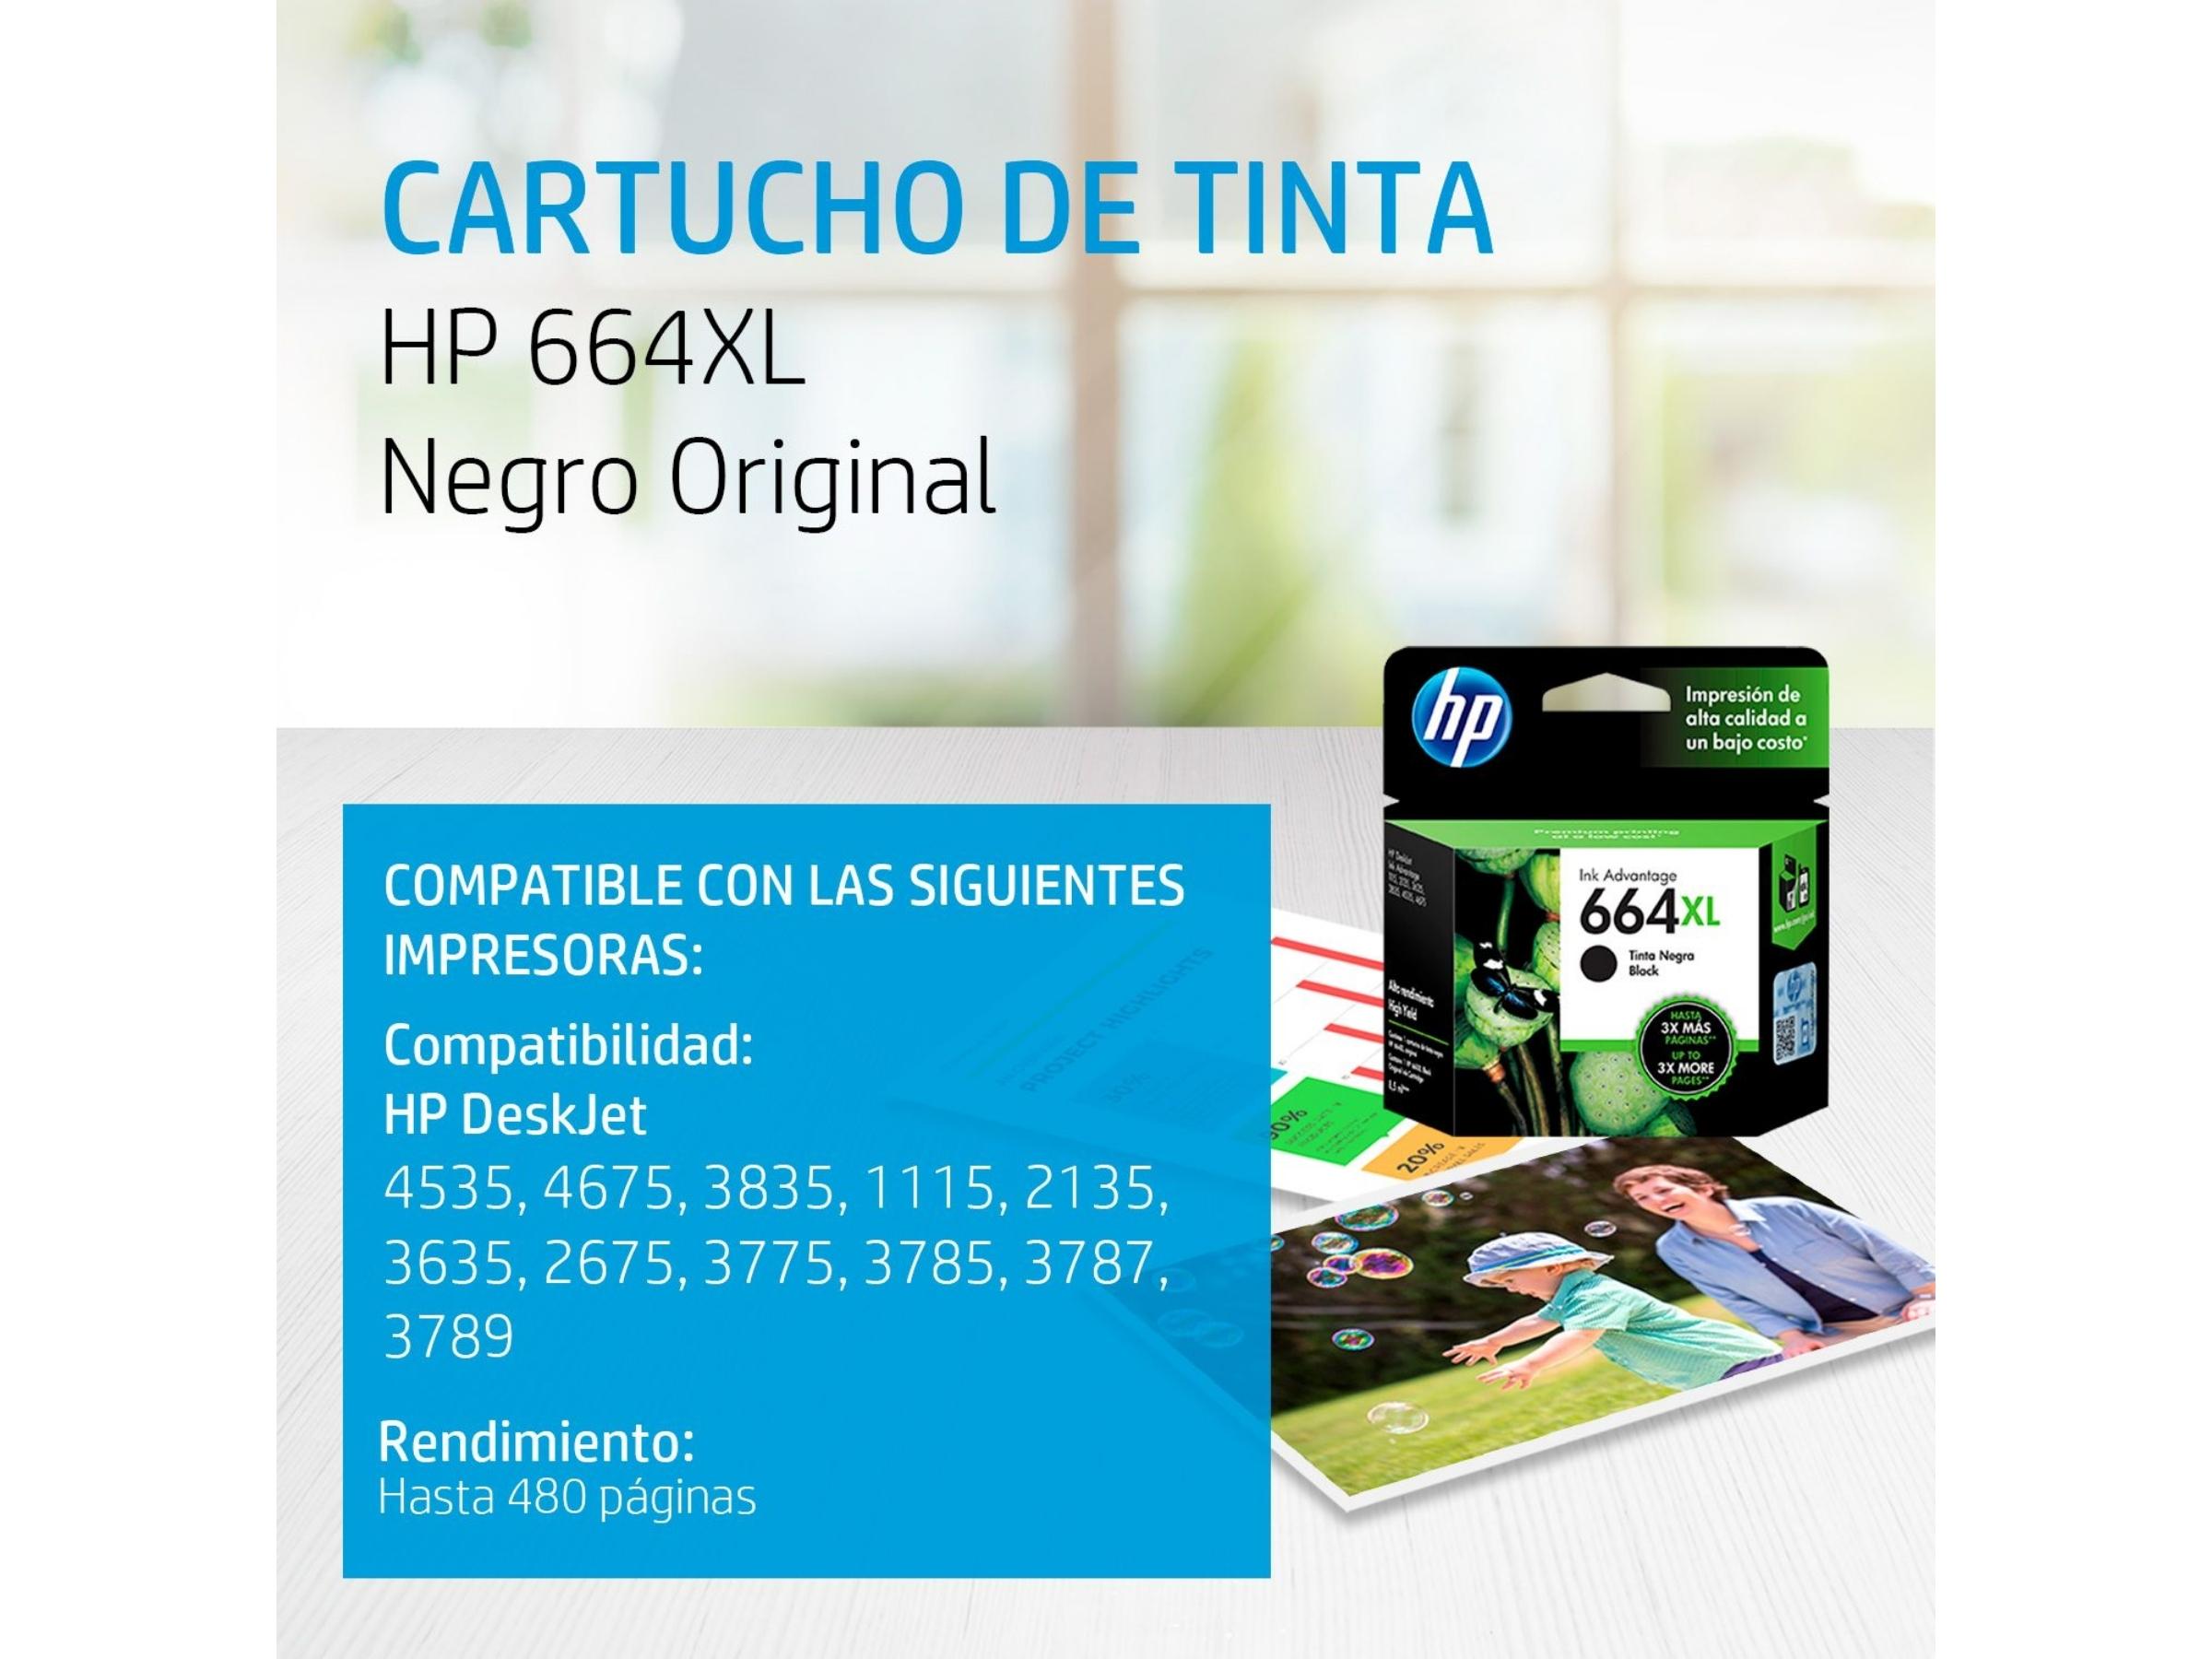 CARTUCHO DE TINTA HP 664XL NEGRO (F6V31AL) 1115/2135/3635/4535/4675